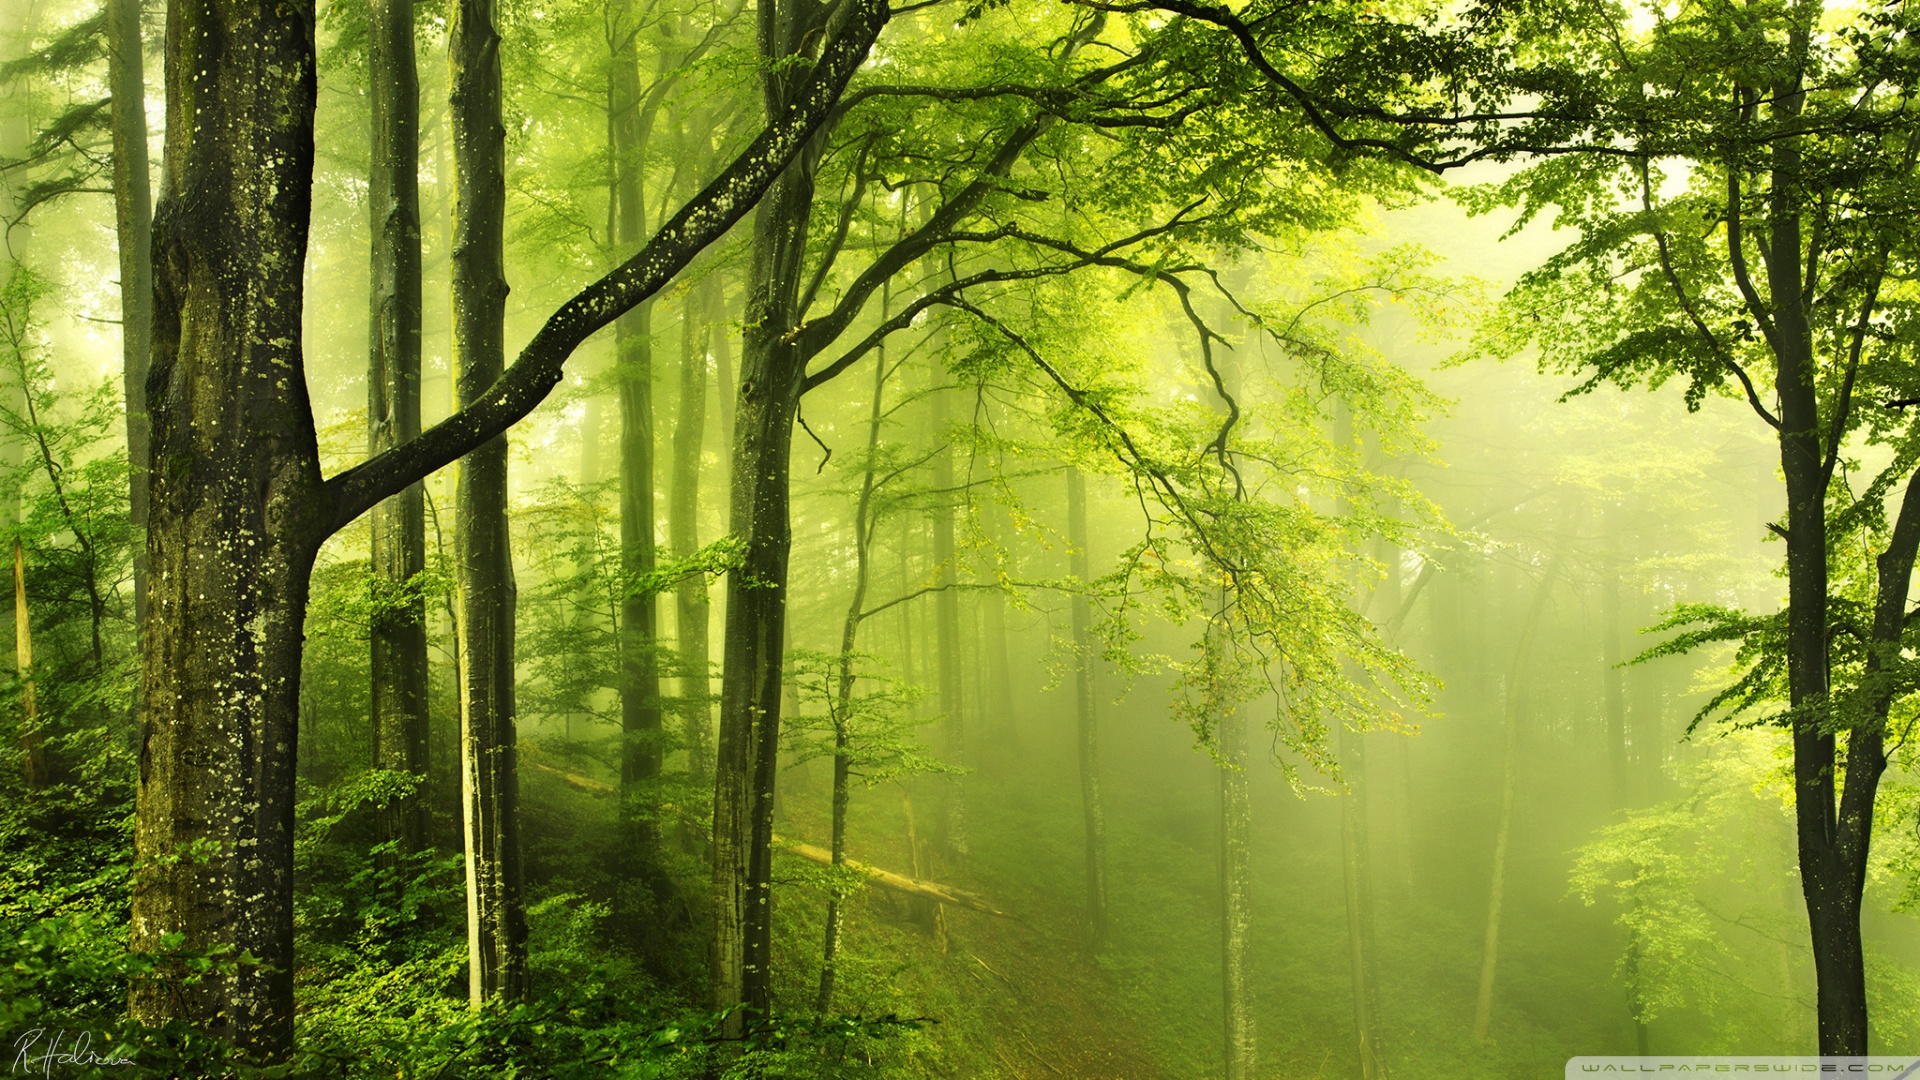 Với hình nền rừng màu xanh đậm HD, bạn sẽ bị cuốn hút bởi vẻ đẹp hoang sơ của khu rừng. Những cánh cây xanh um tươi, những bông hoa đua nở tạo nên một khung cảnh mơ mộng và huyền bí. Không chỉ đẹp mà còn đầy tinh tế và lôi cuốn.